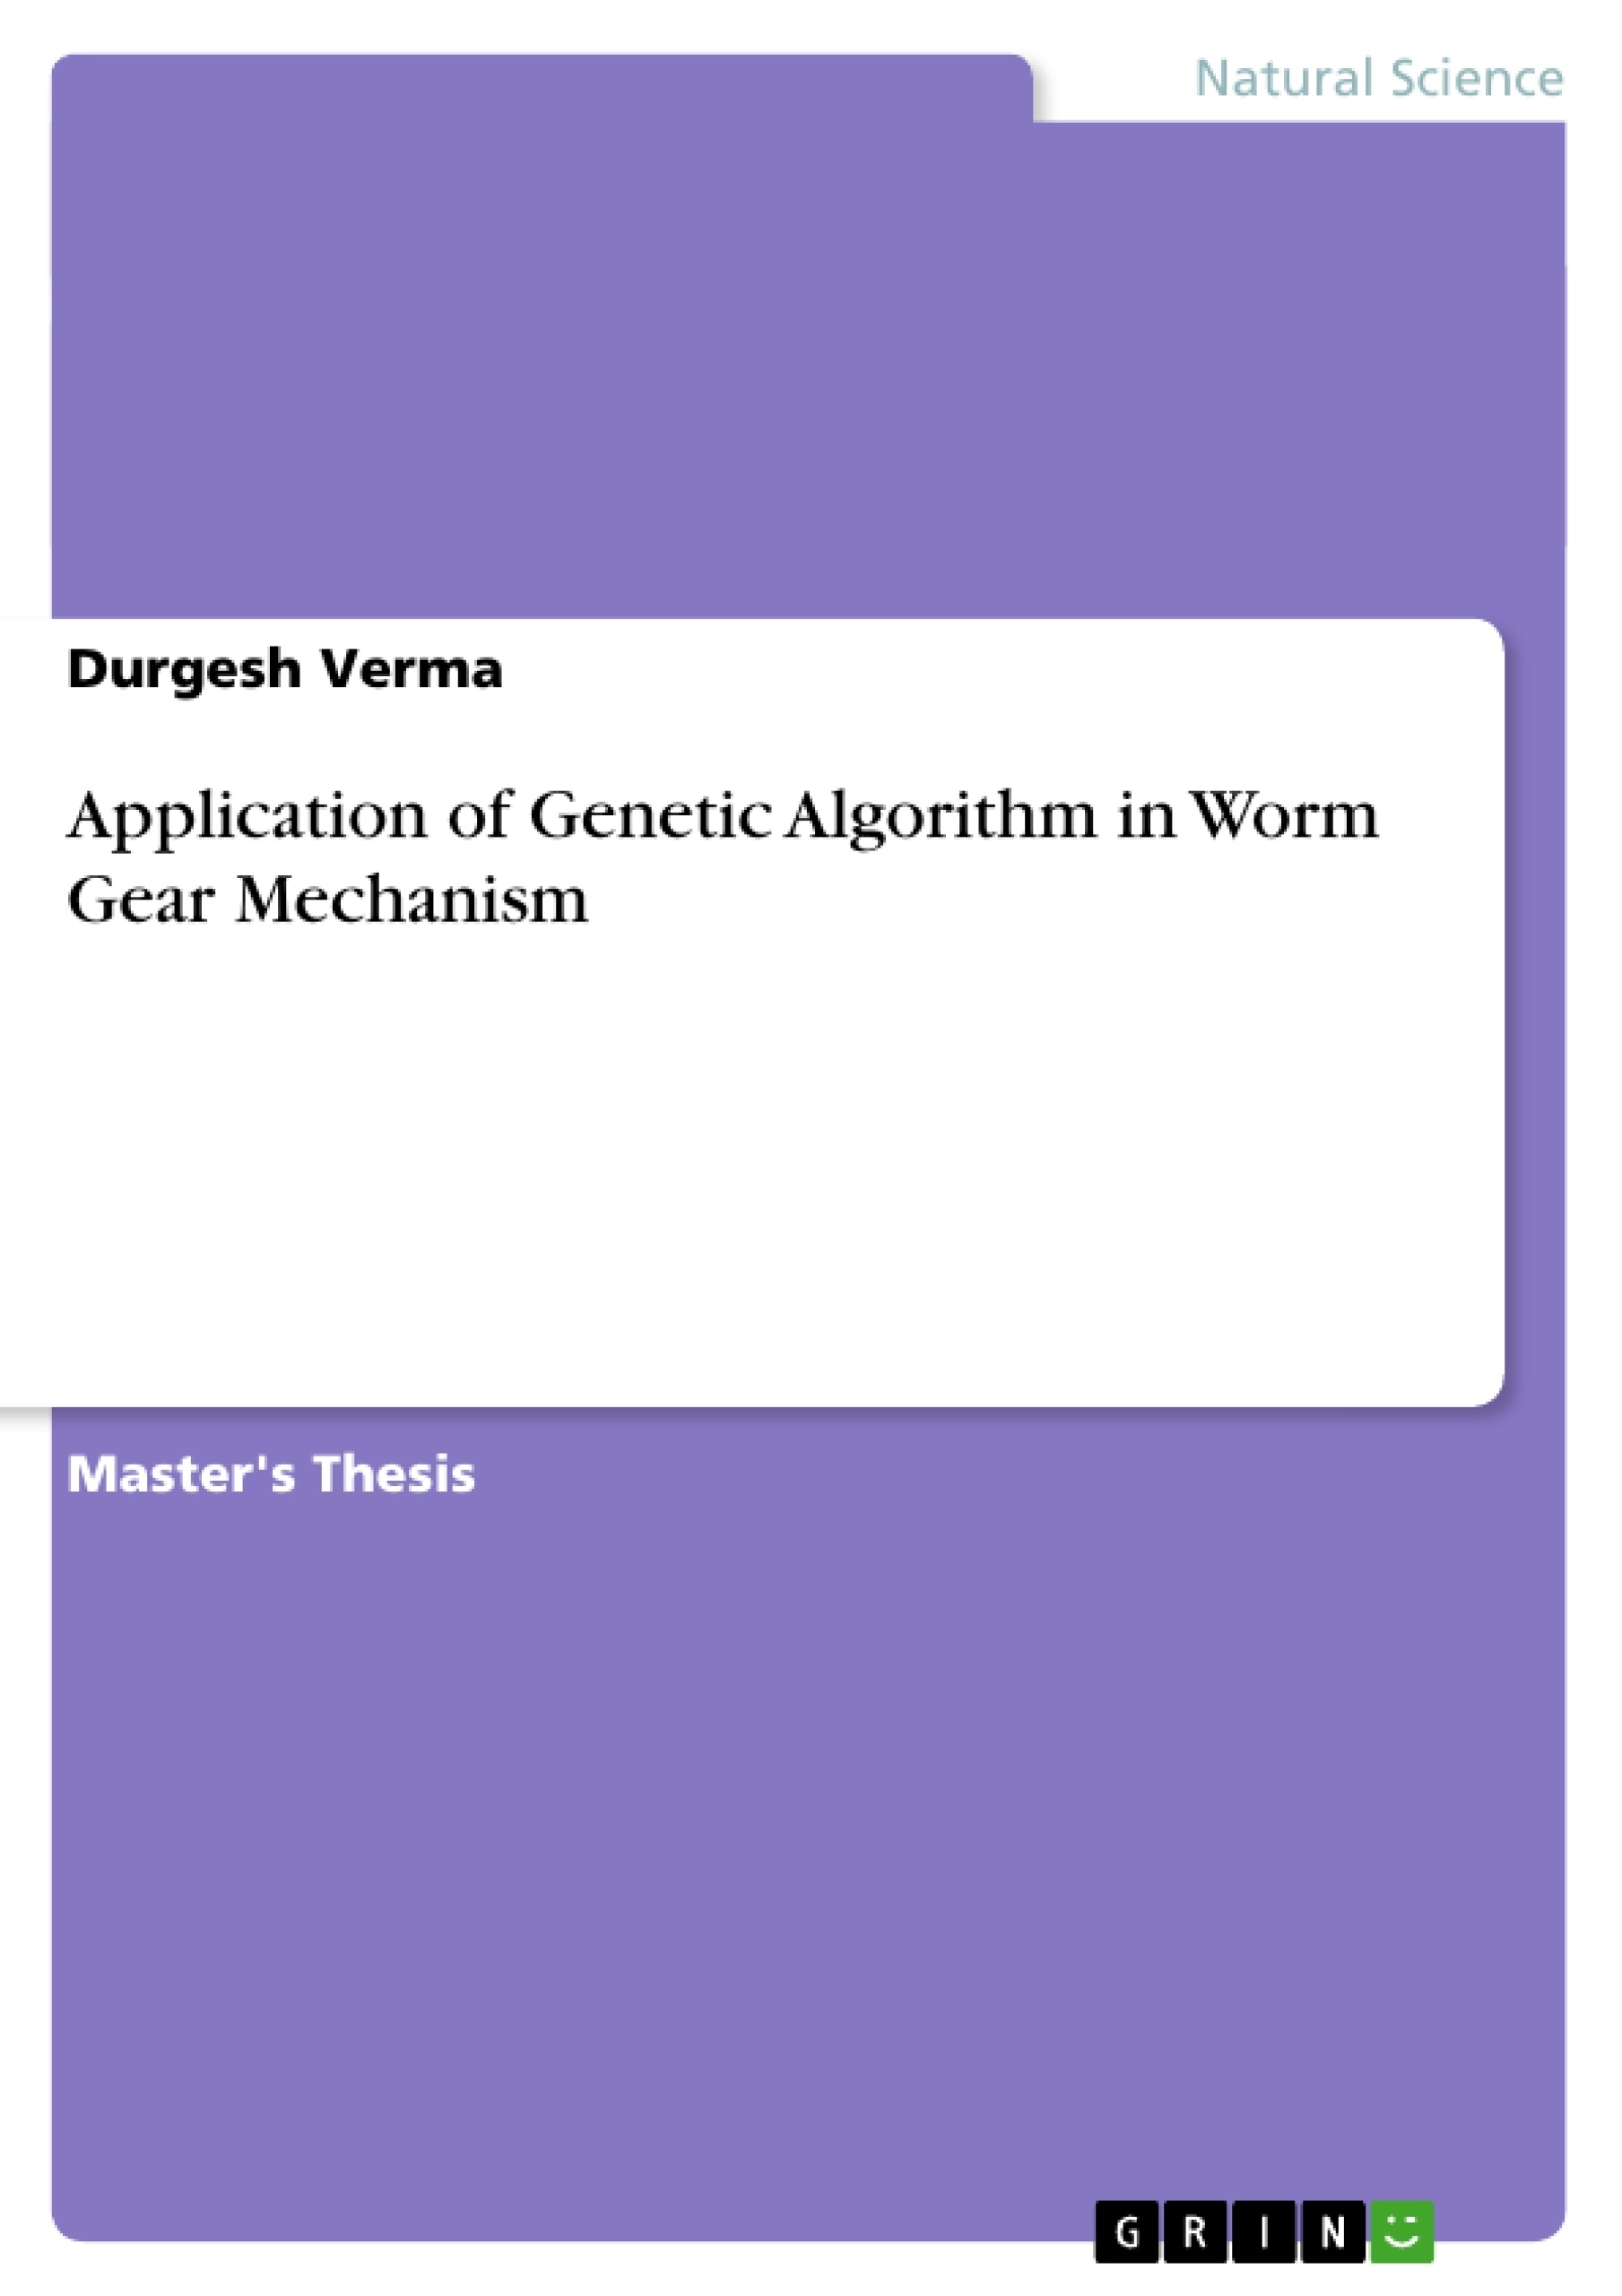 Title: Application of Genetic Algorithm in Worm Gear Mechanism